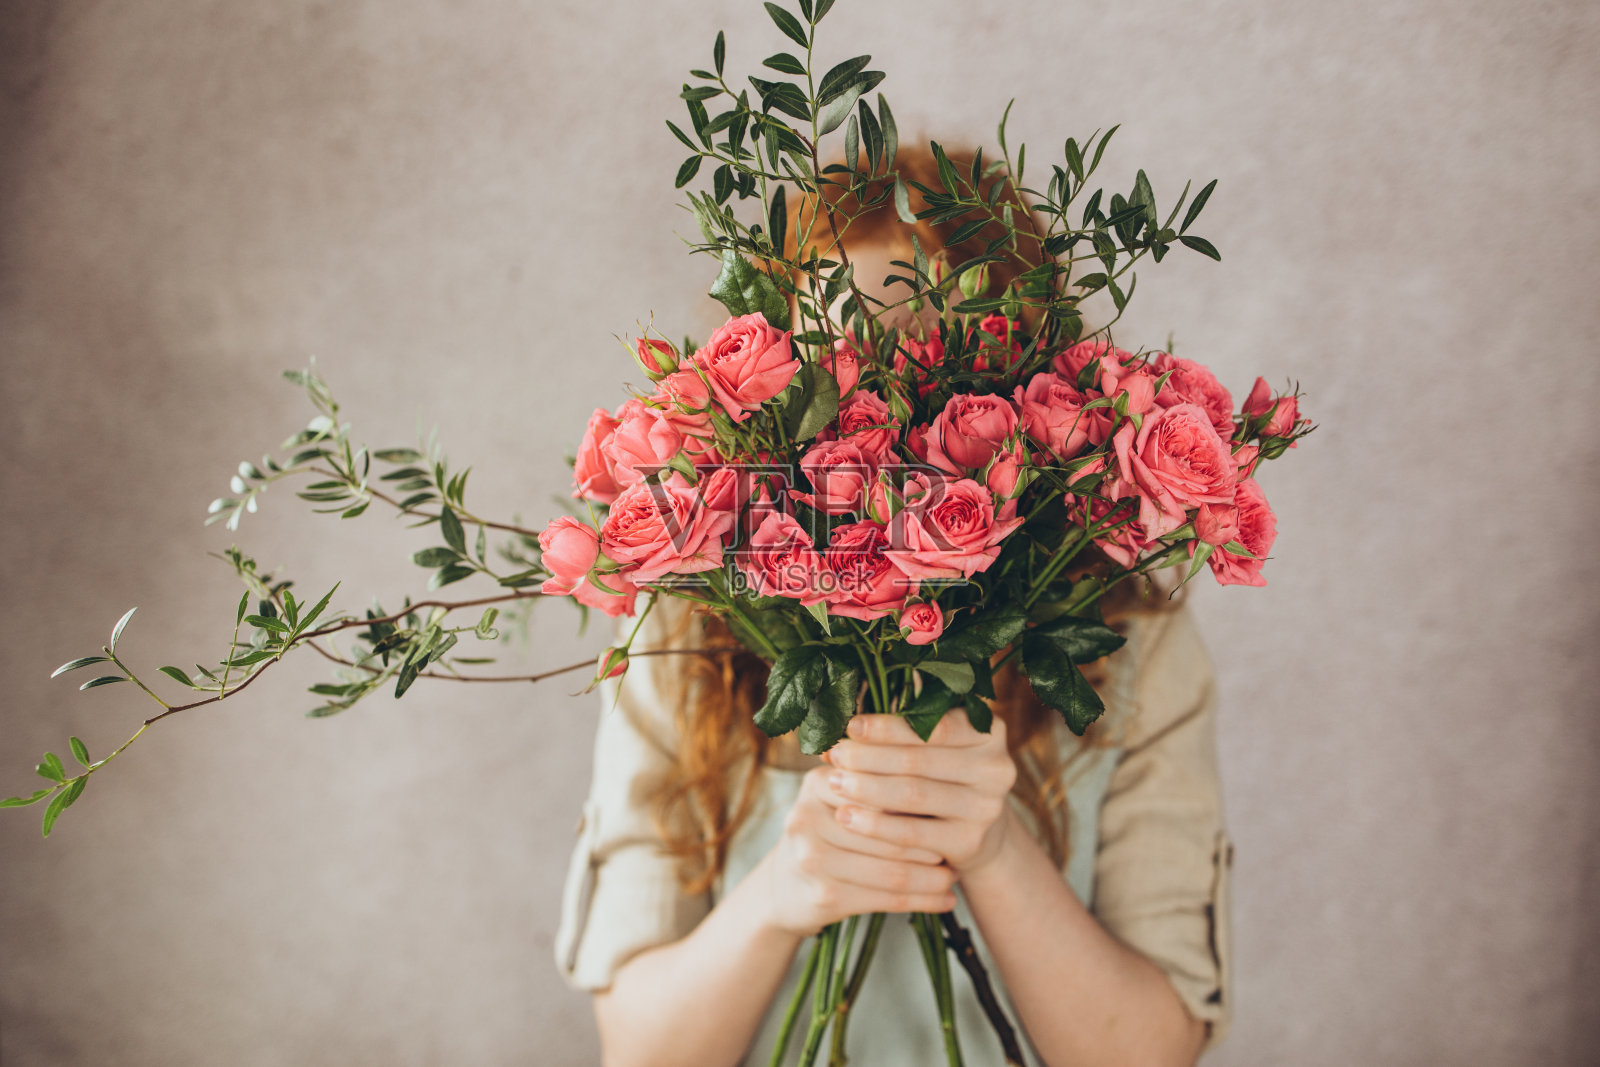 拿着一束鲜花的女人 免费图片 - Public Domain Pictures